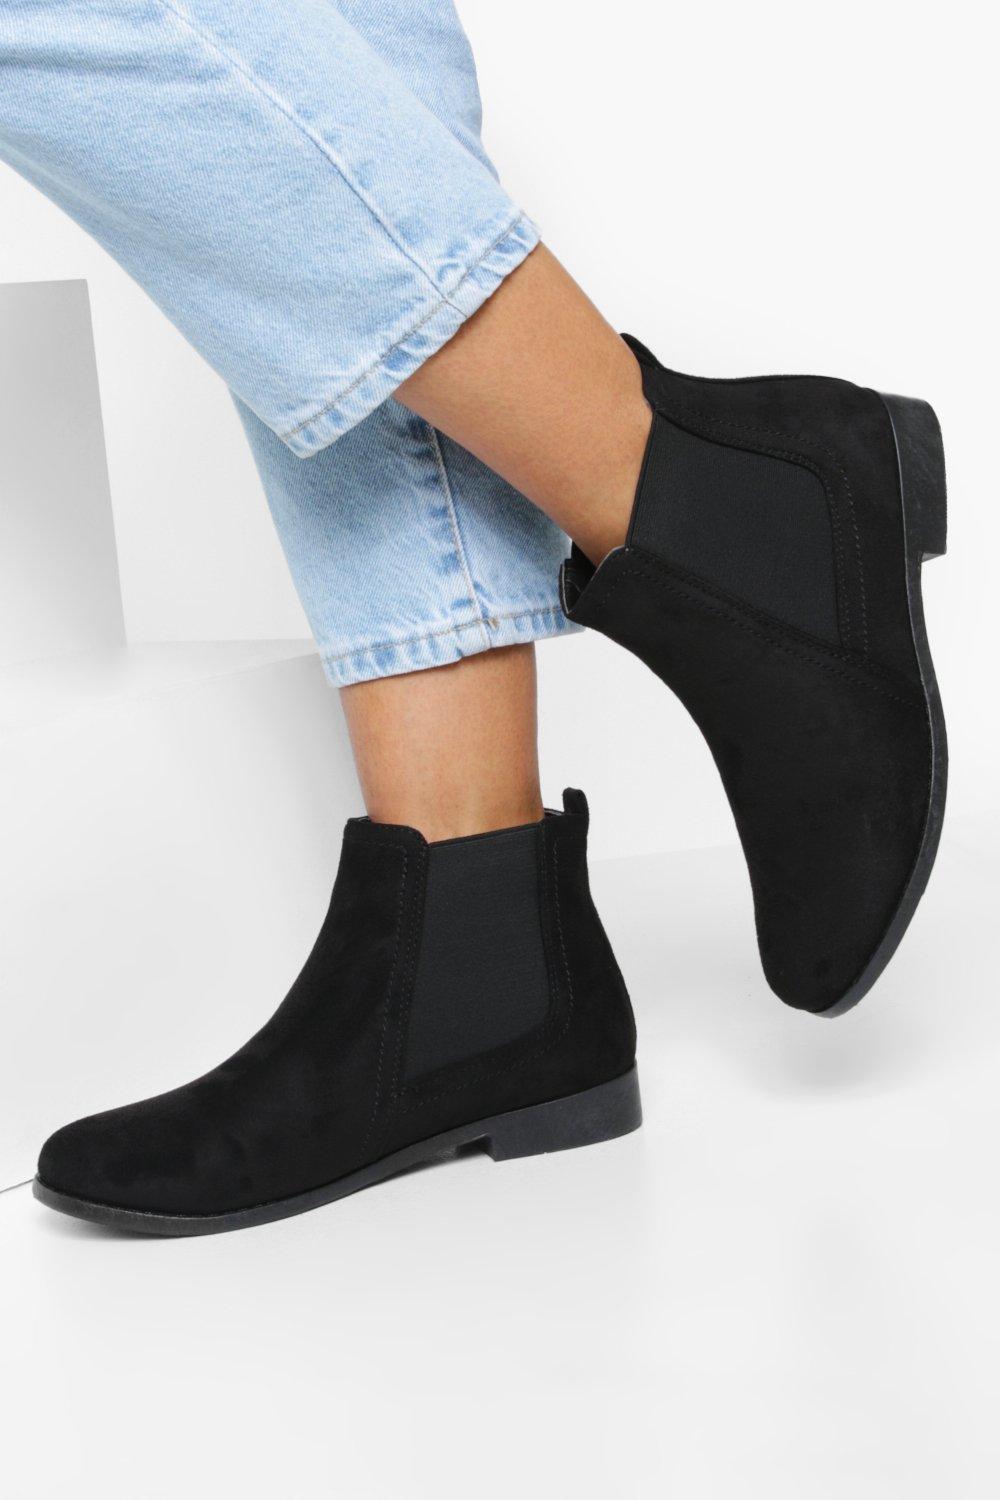 Womens Wide Fit Suedette Flat Chelsea Boots - Black - 3, Black